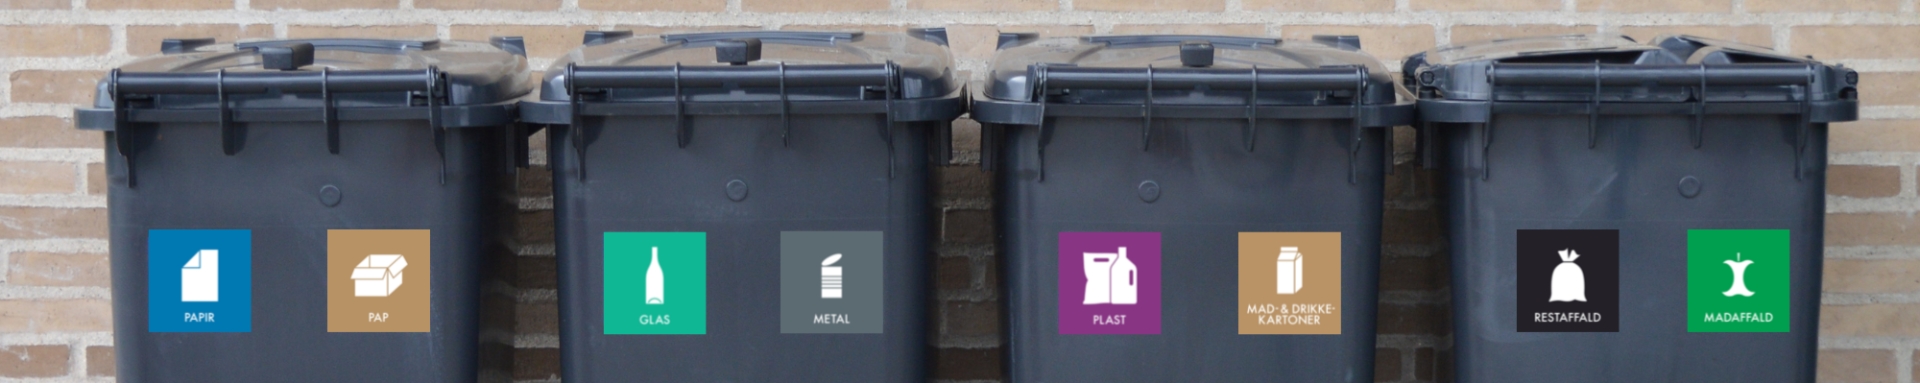 Fire sorte affaldsbeholdere på række med landsdækkende piktogrammer på